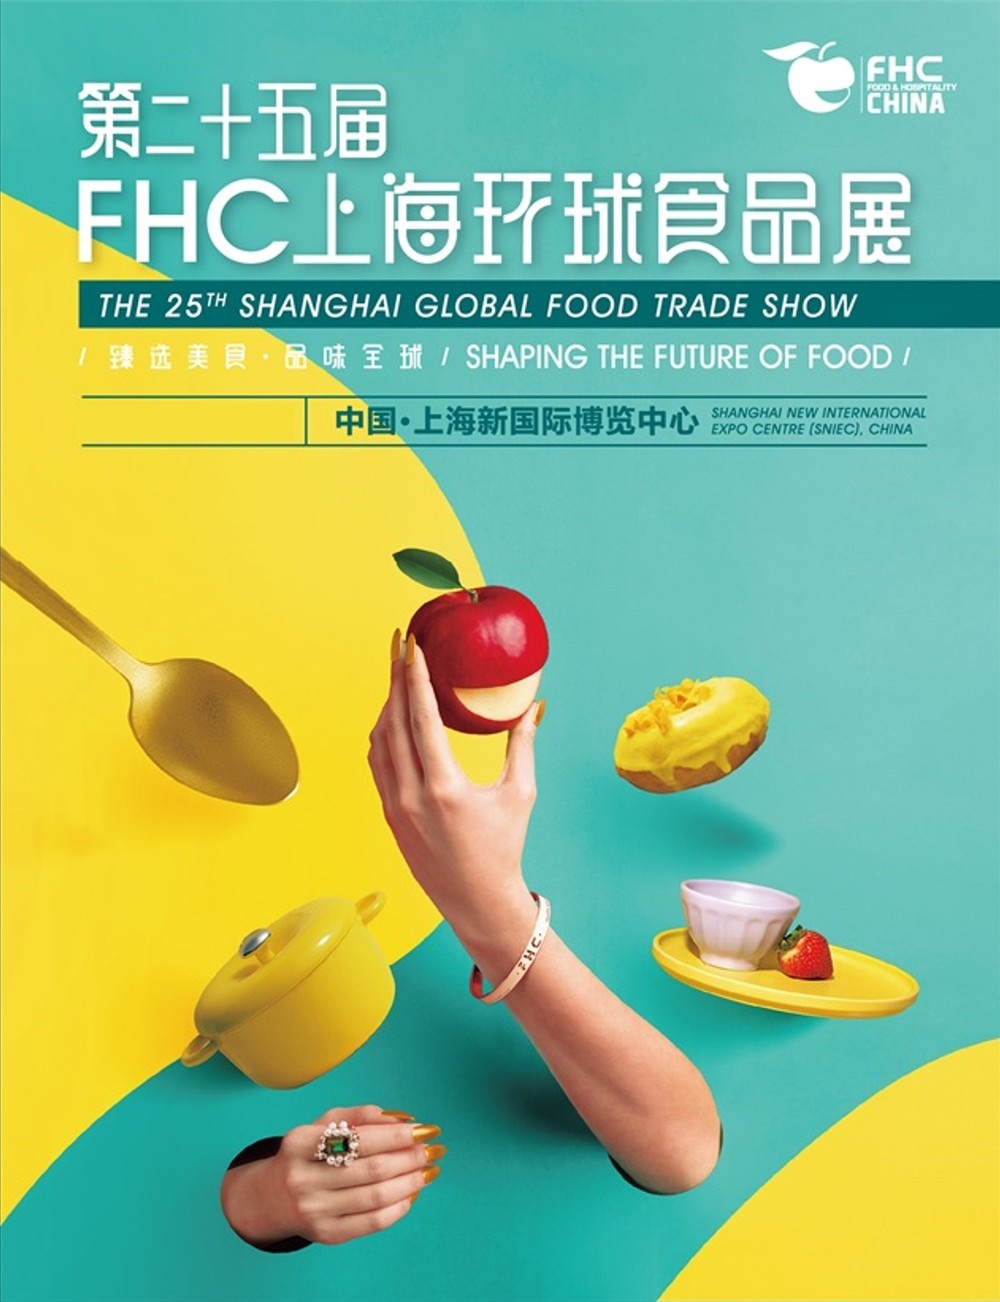 中国2022上海豆制品展览会 FHC (Food & Hotel China)